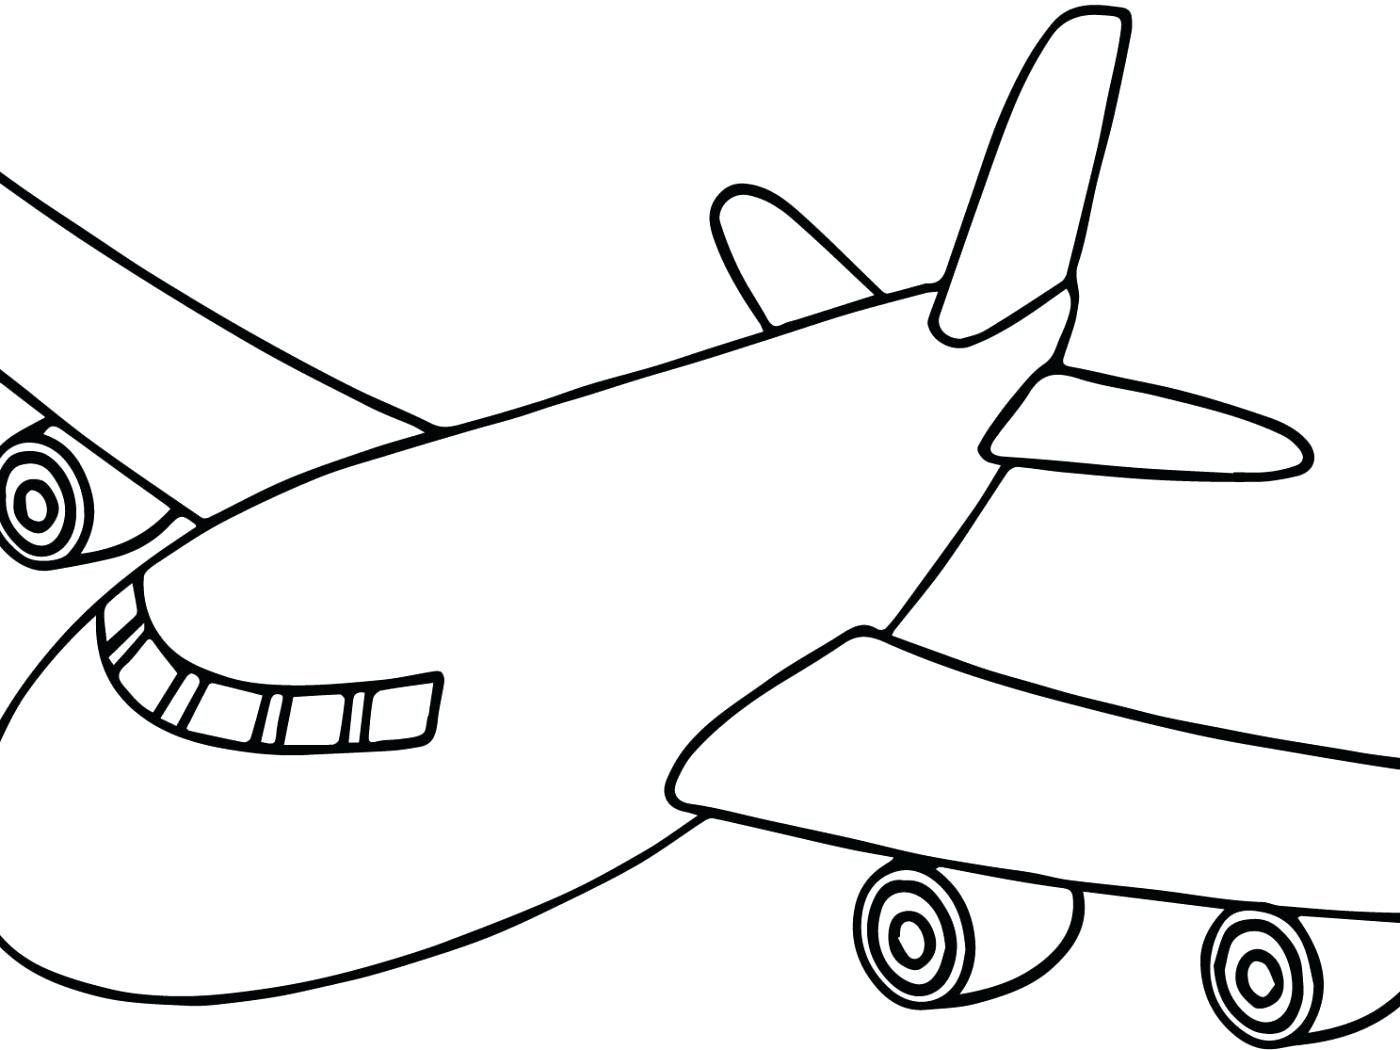 Самолет нарисованный. Самолет раскраска для детей. Самолетик раскраска для детей. Самолет рисунок раскраска. Самолет для раскрашивания для детей.